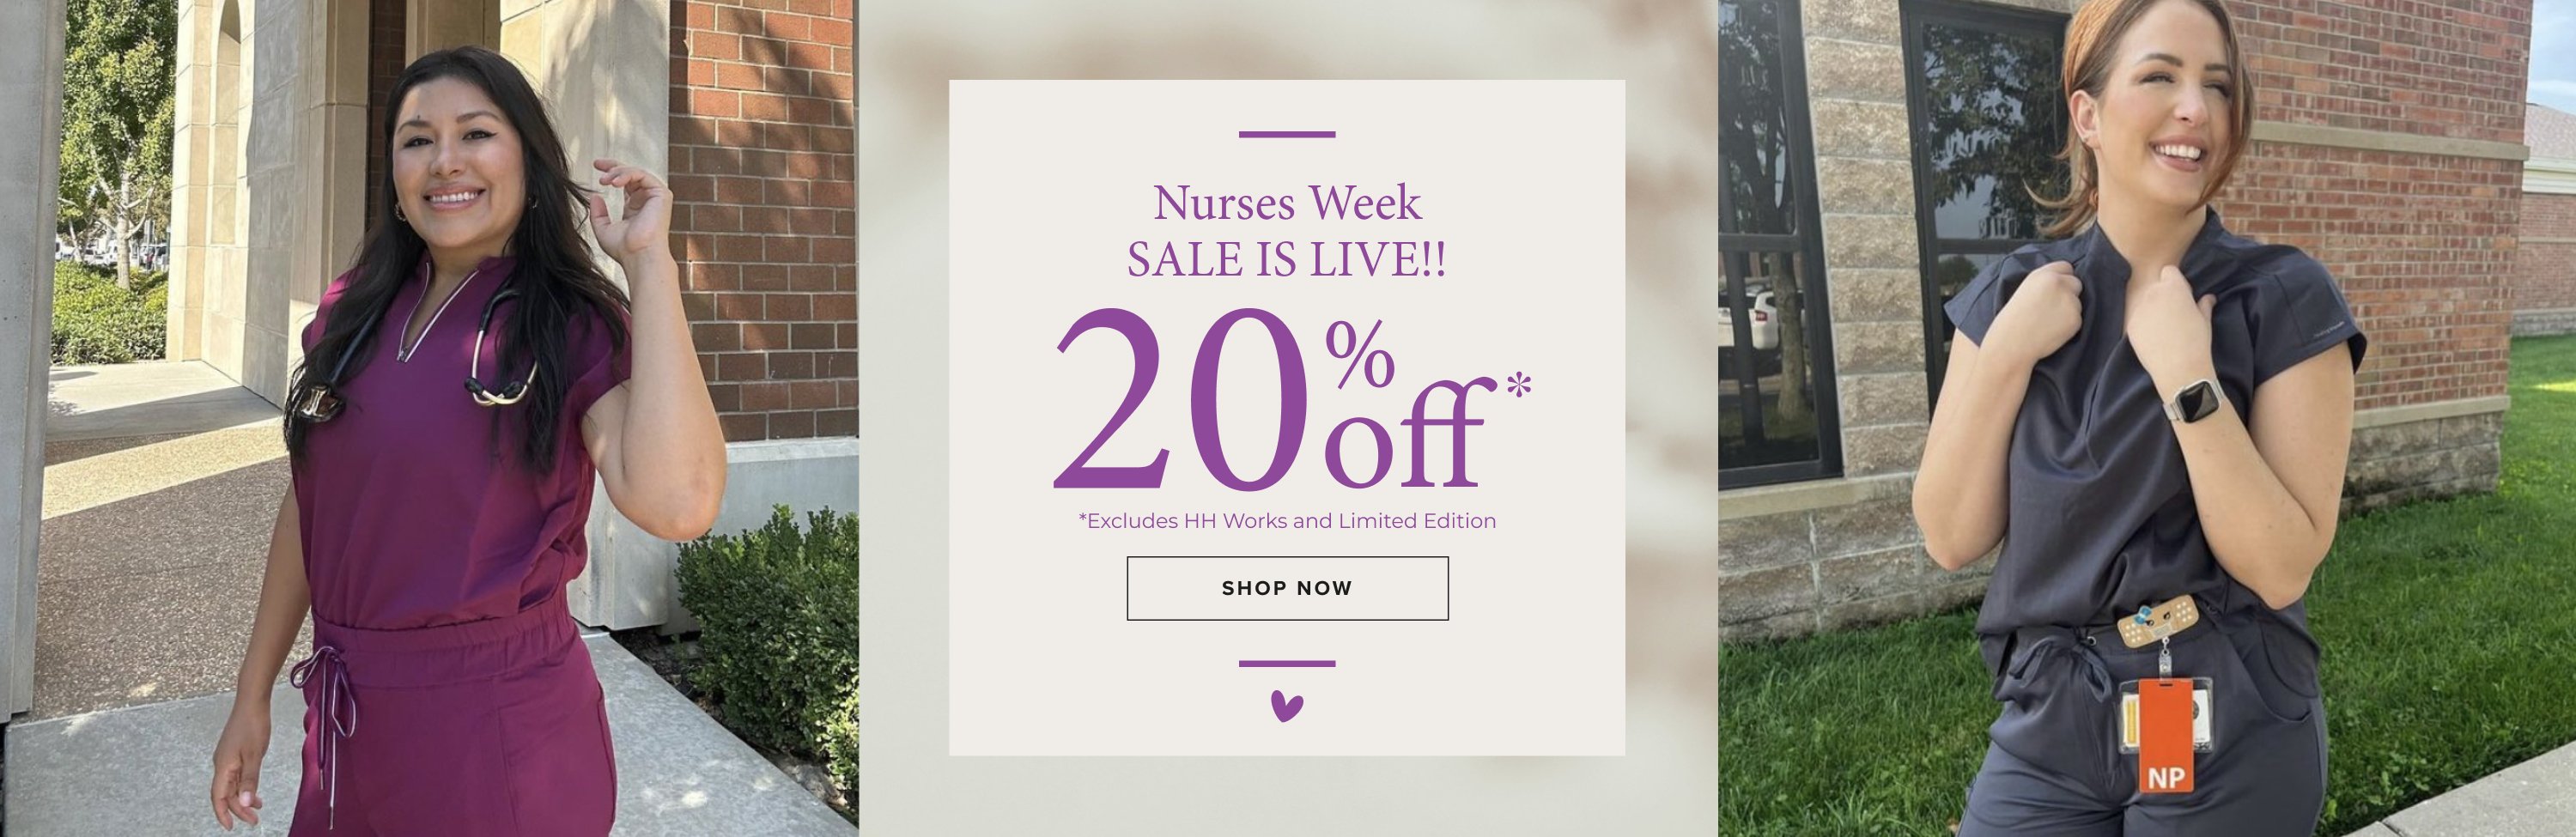 Nurses Week Sale
is live!